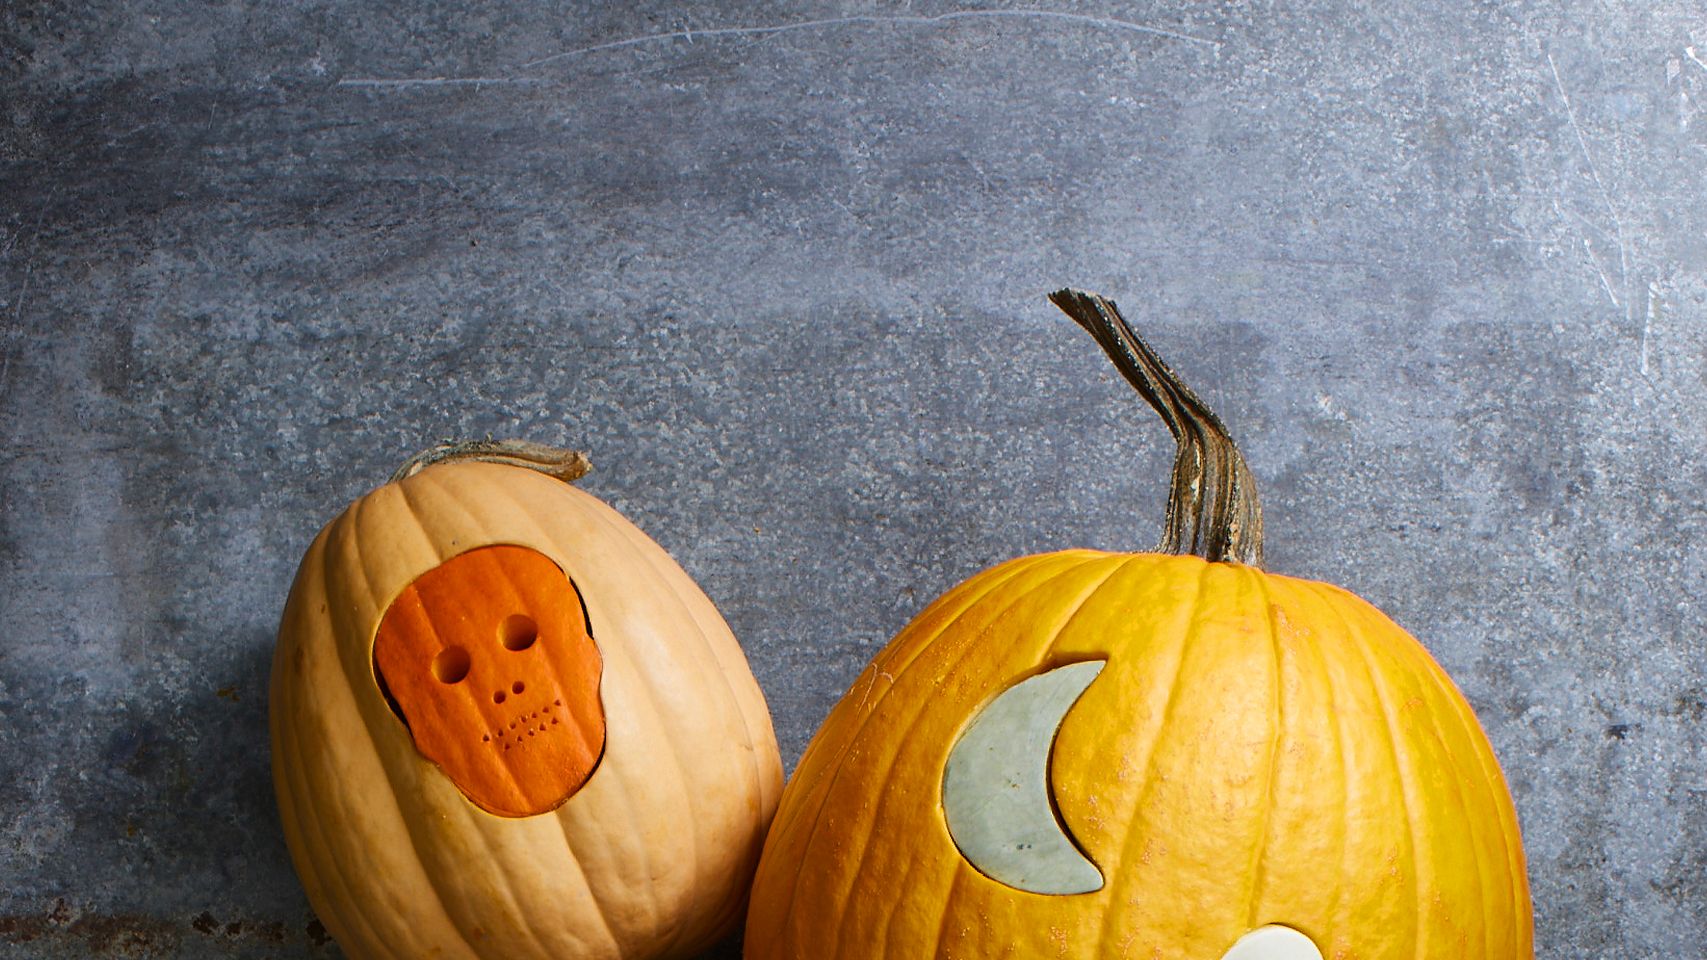 creative pumpkin carving ideas